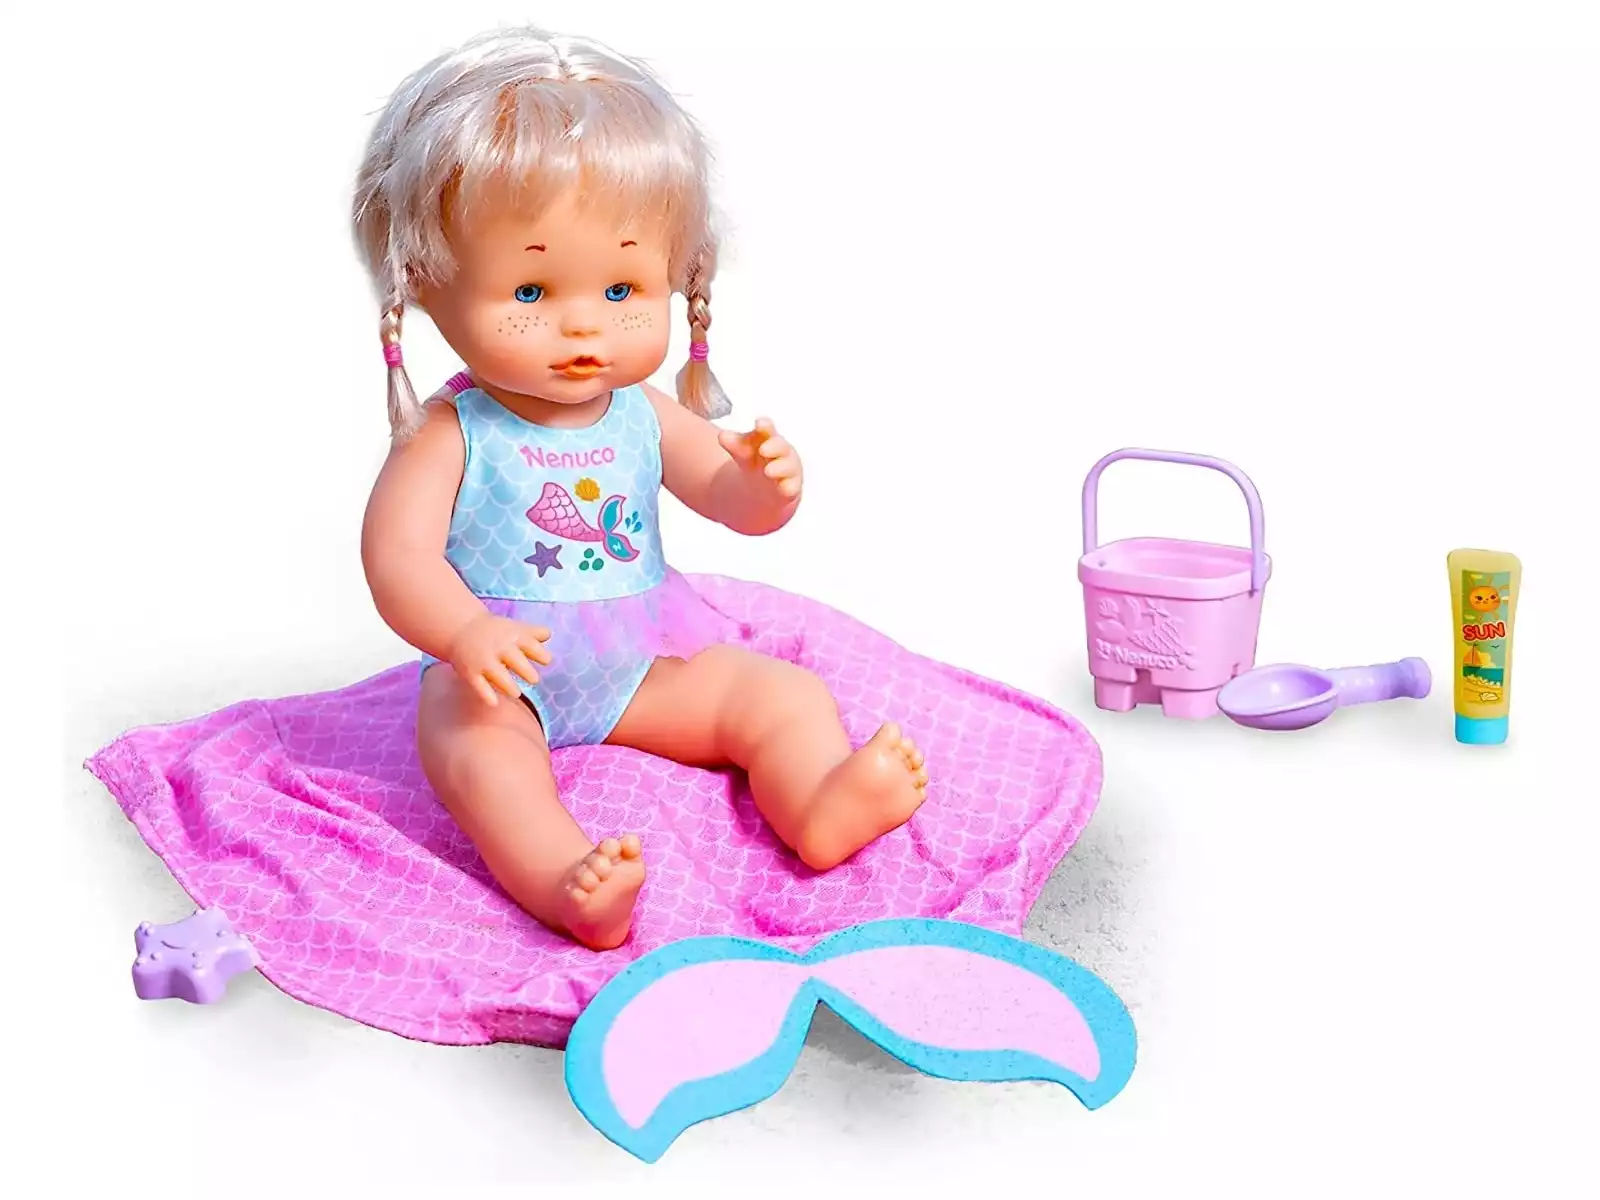 Nenuco Bebé › Muñecos, y accesorios - Juguetilandia